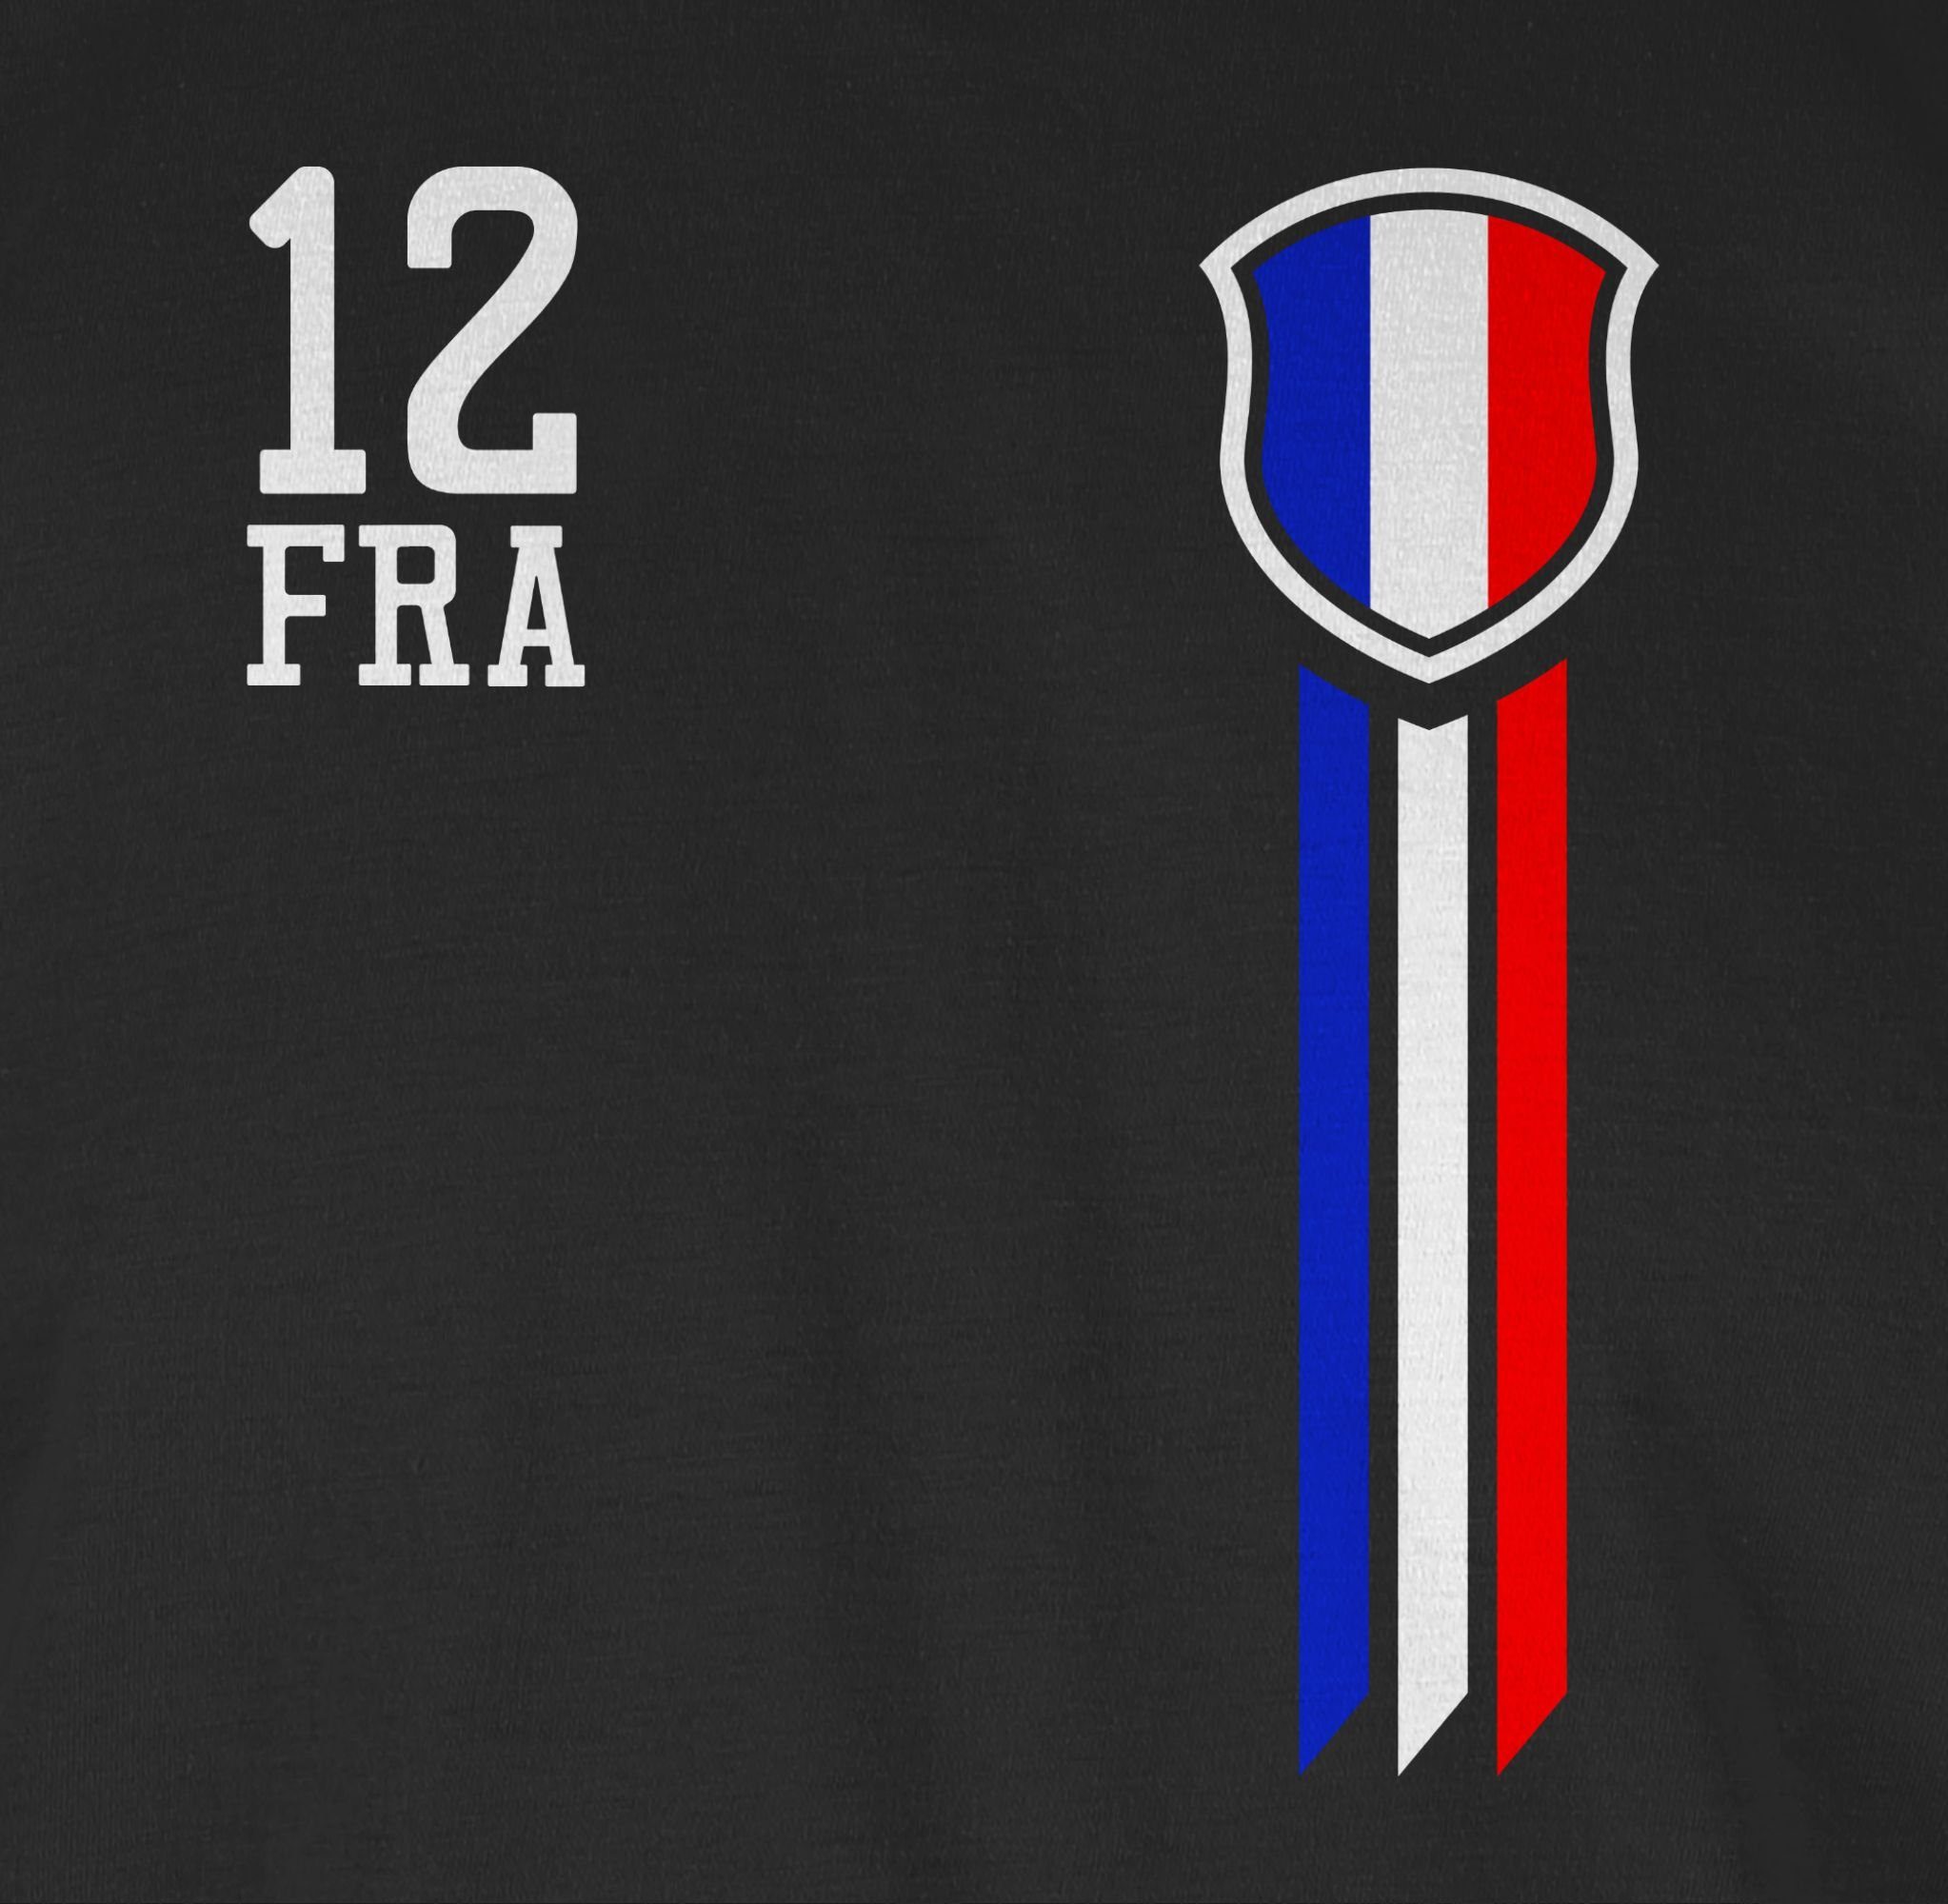 Mann T-Shirt Fanshirt EM 3 Frankreich 2024 Fussball Shirtracer Schwarz 12.